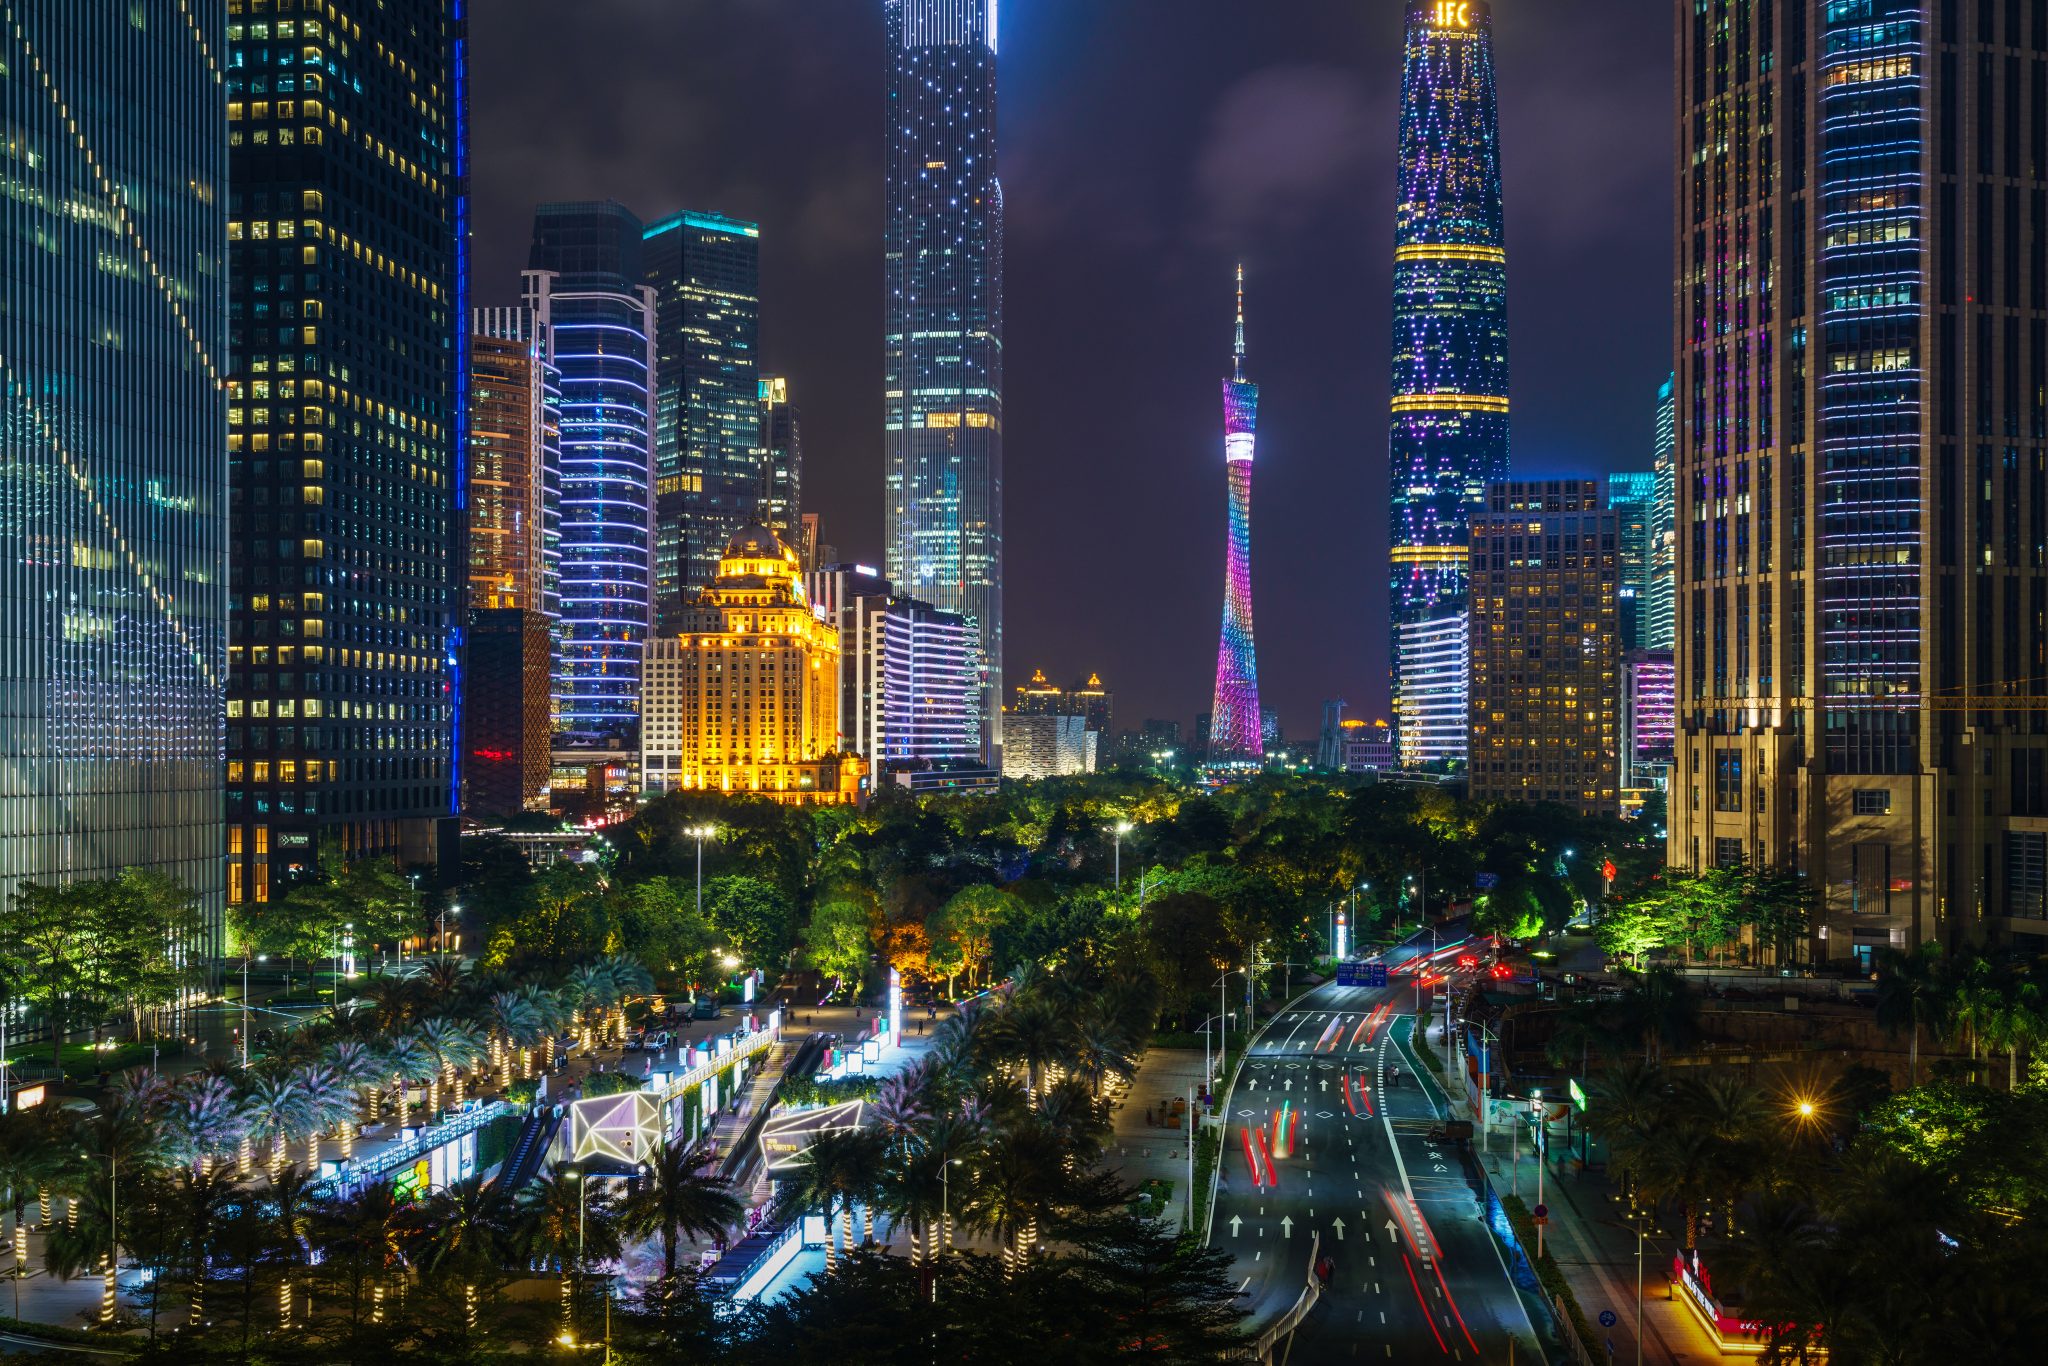 Guangzhou Skyline